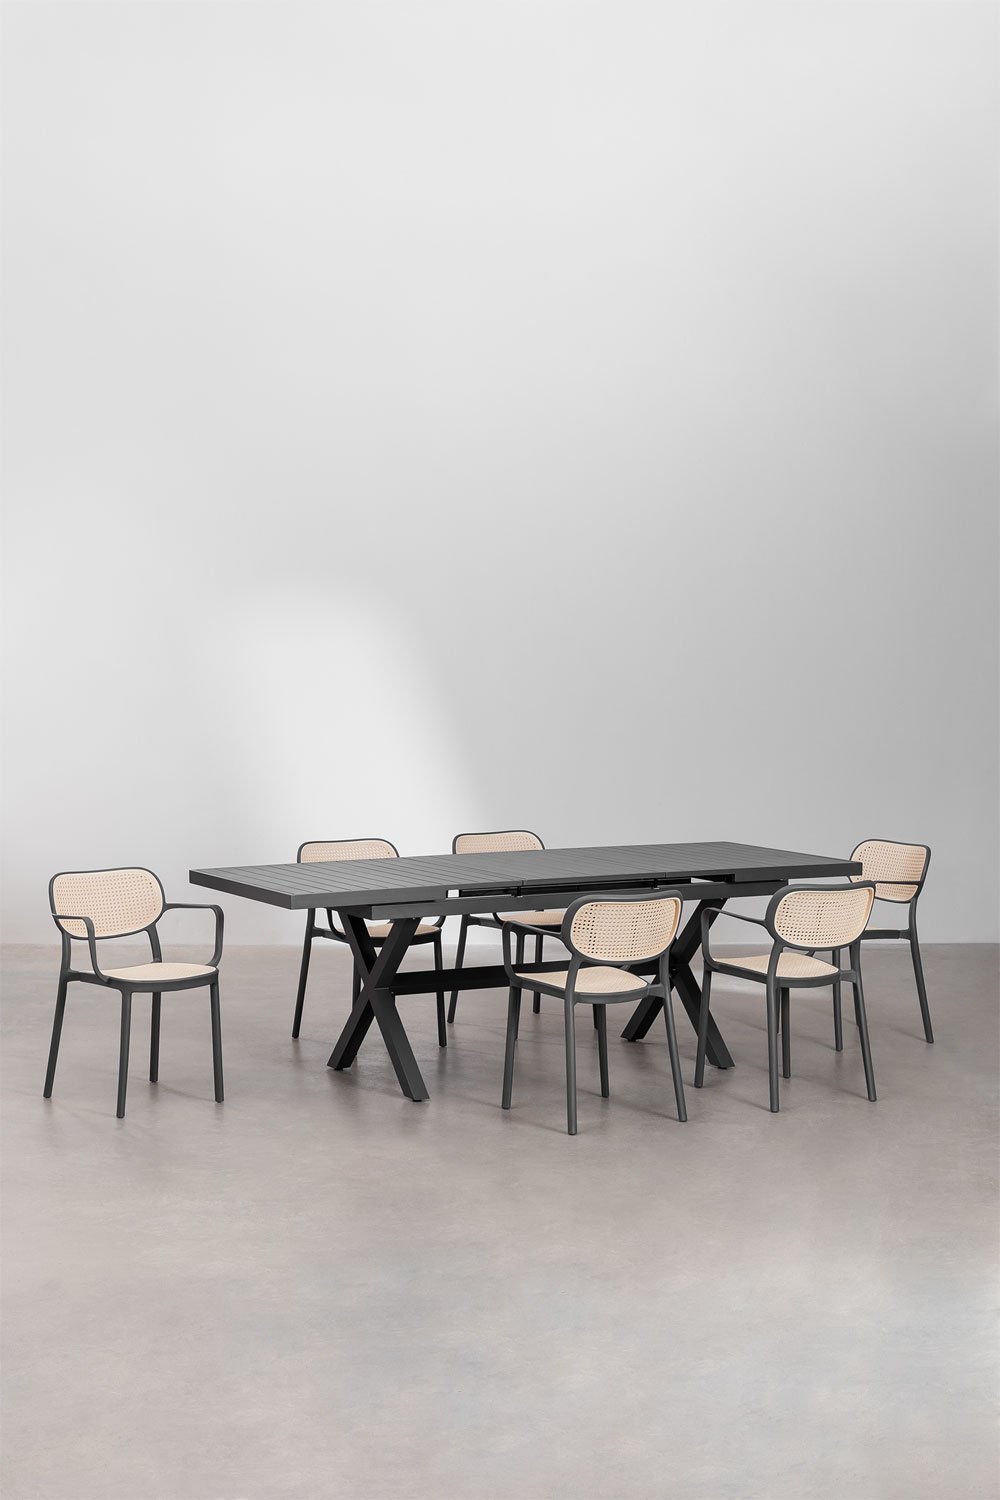 Ensemble table de jardin extensible en aluminium (180-240x90 cm) Karena et 6 chaises de jardin avec accoudoirs Omara  , image de la galerie 1